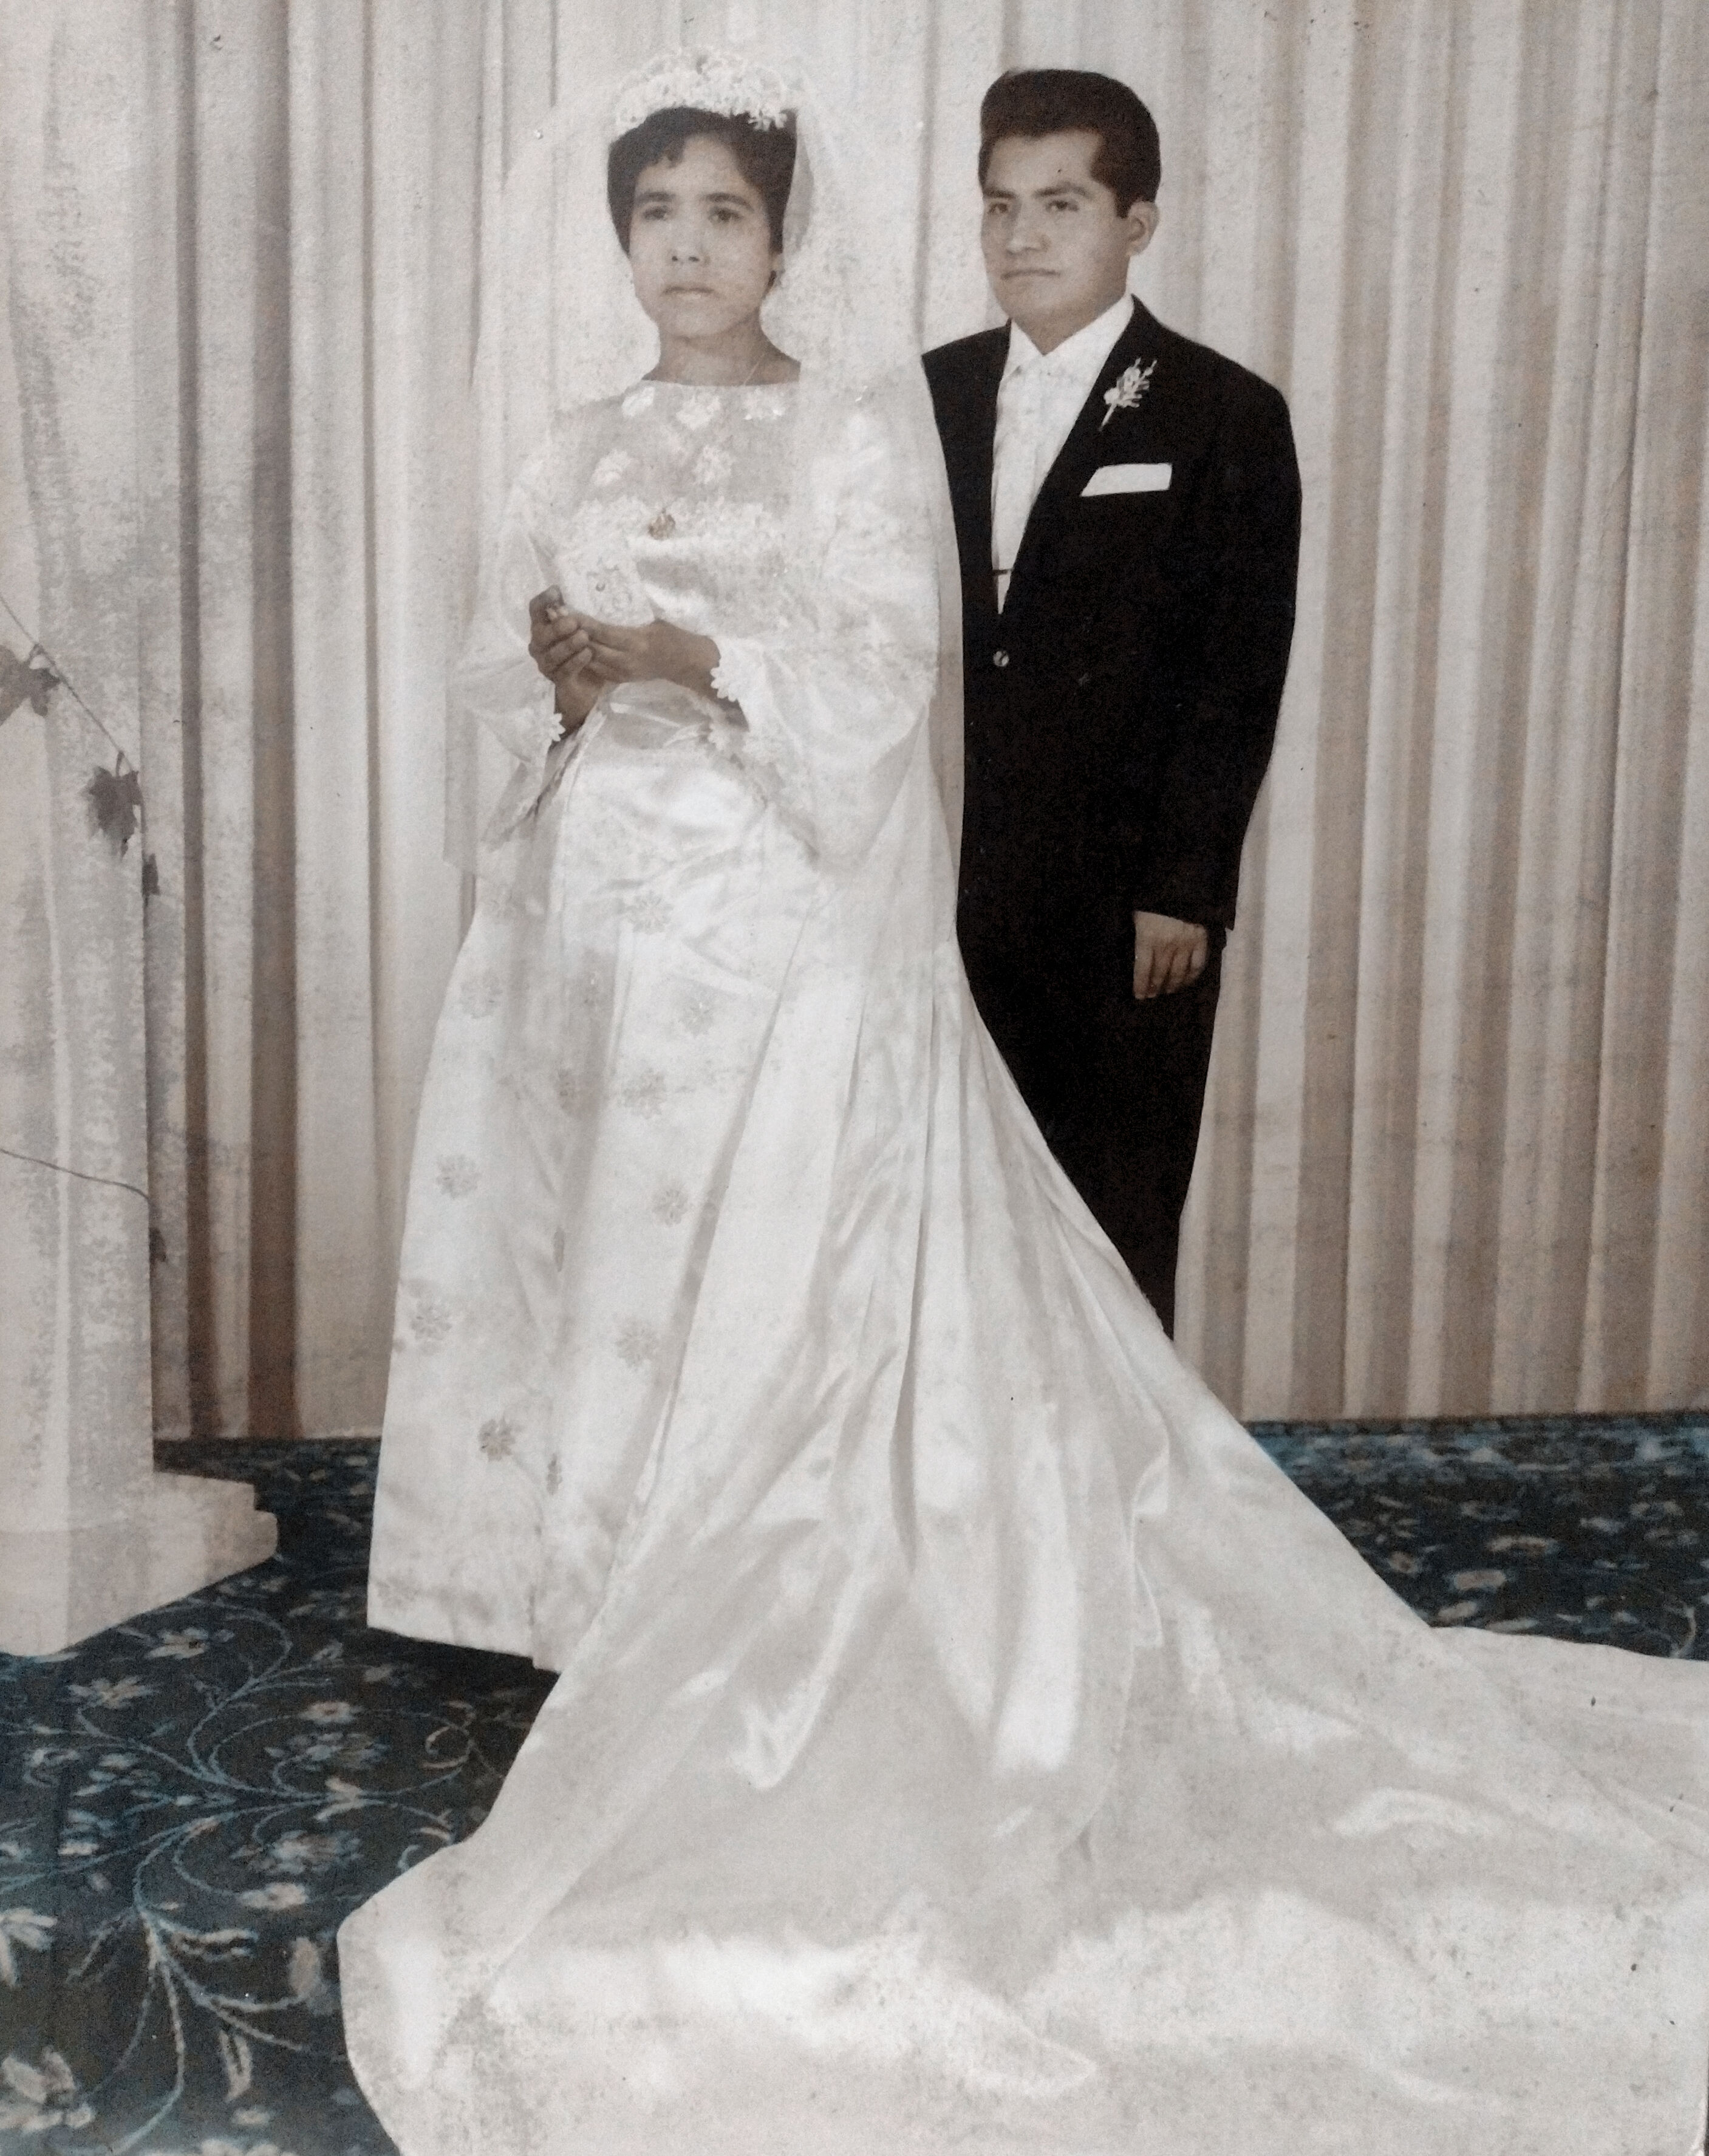 El día que contrajeron nupcias mis padres, con fecha 9 de diciembre  1967 hoy 9 diciembre 2023 estarían cumpliendo 56 años de casados. Ya trascendieron con Dios.